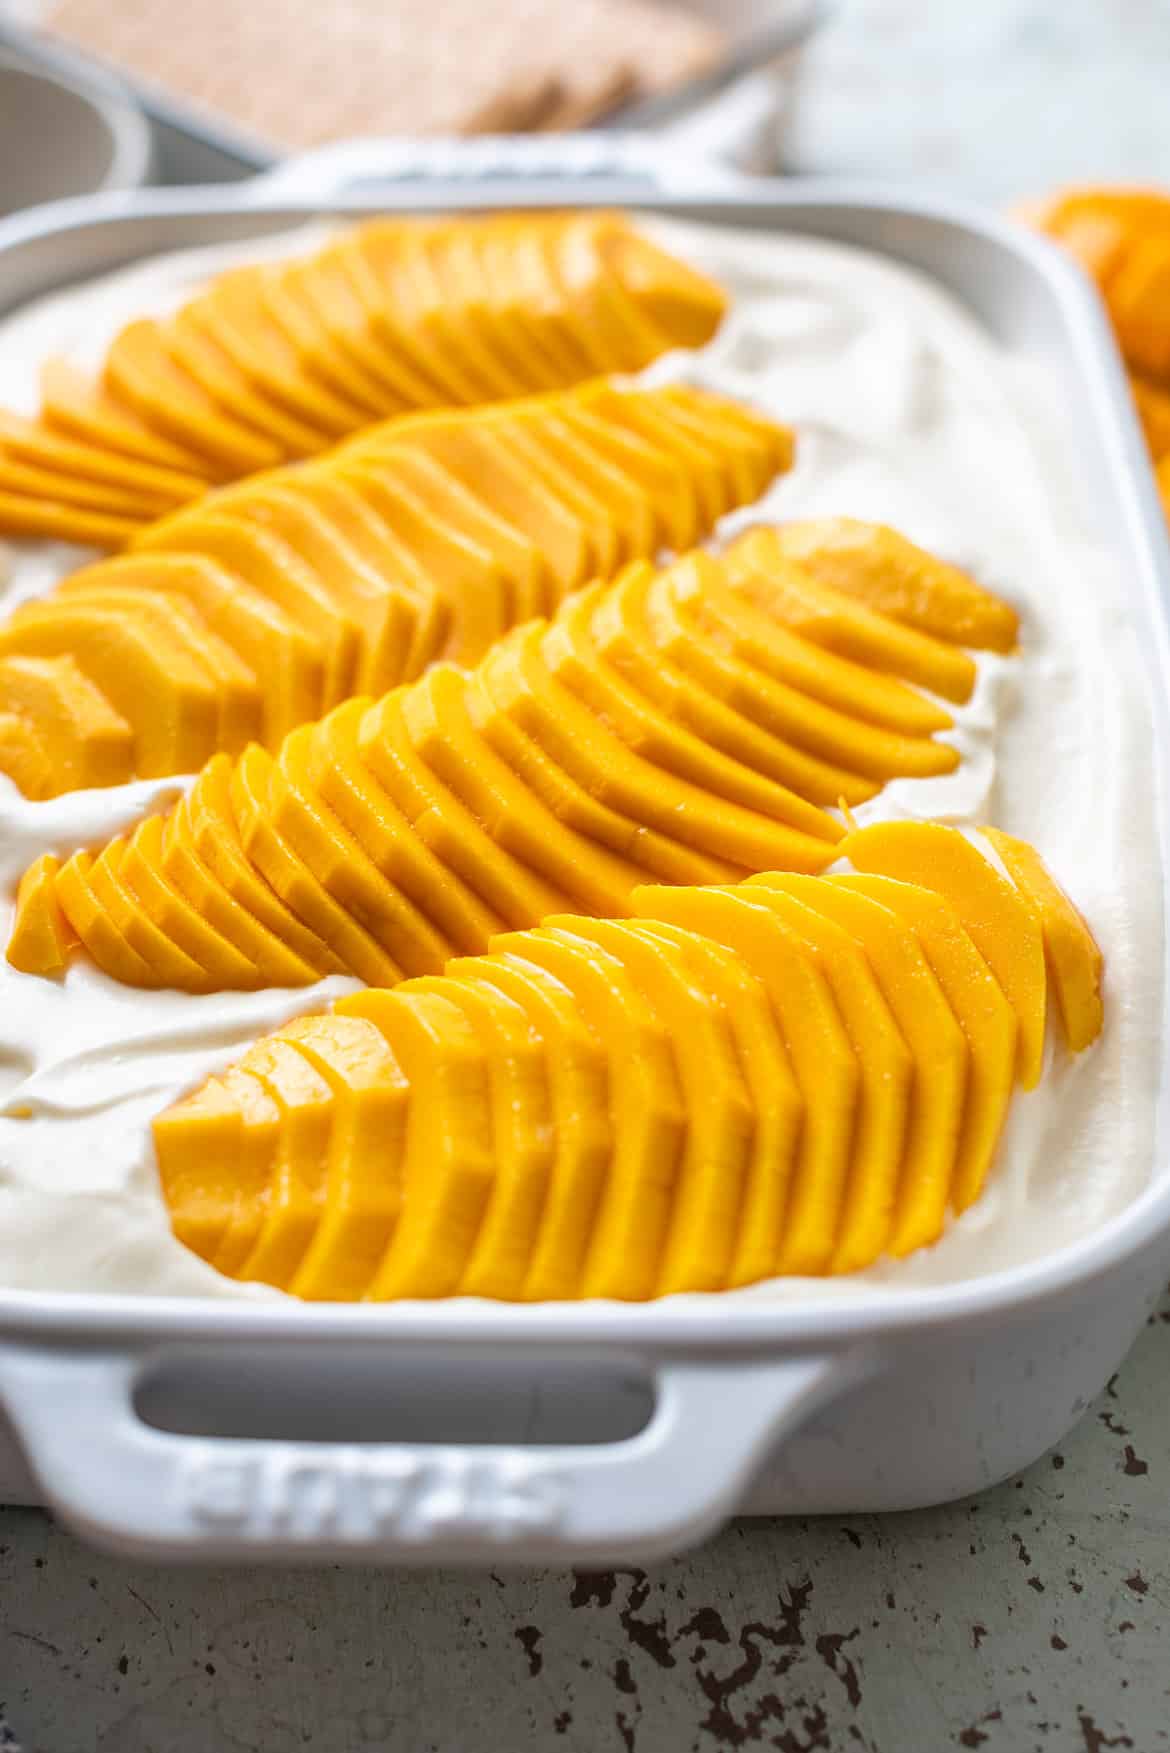 Mango float dessert assembled in a white dish.